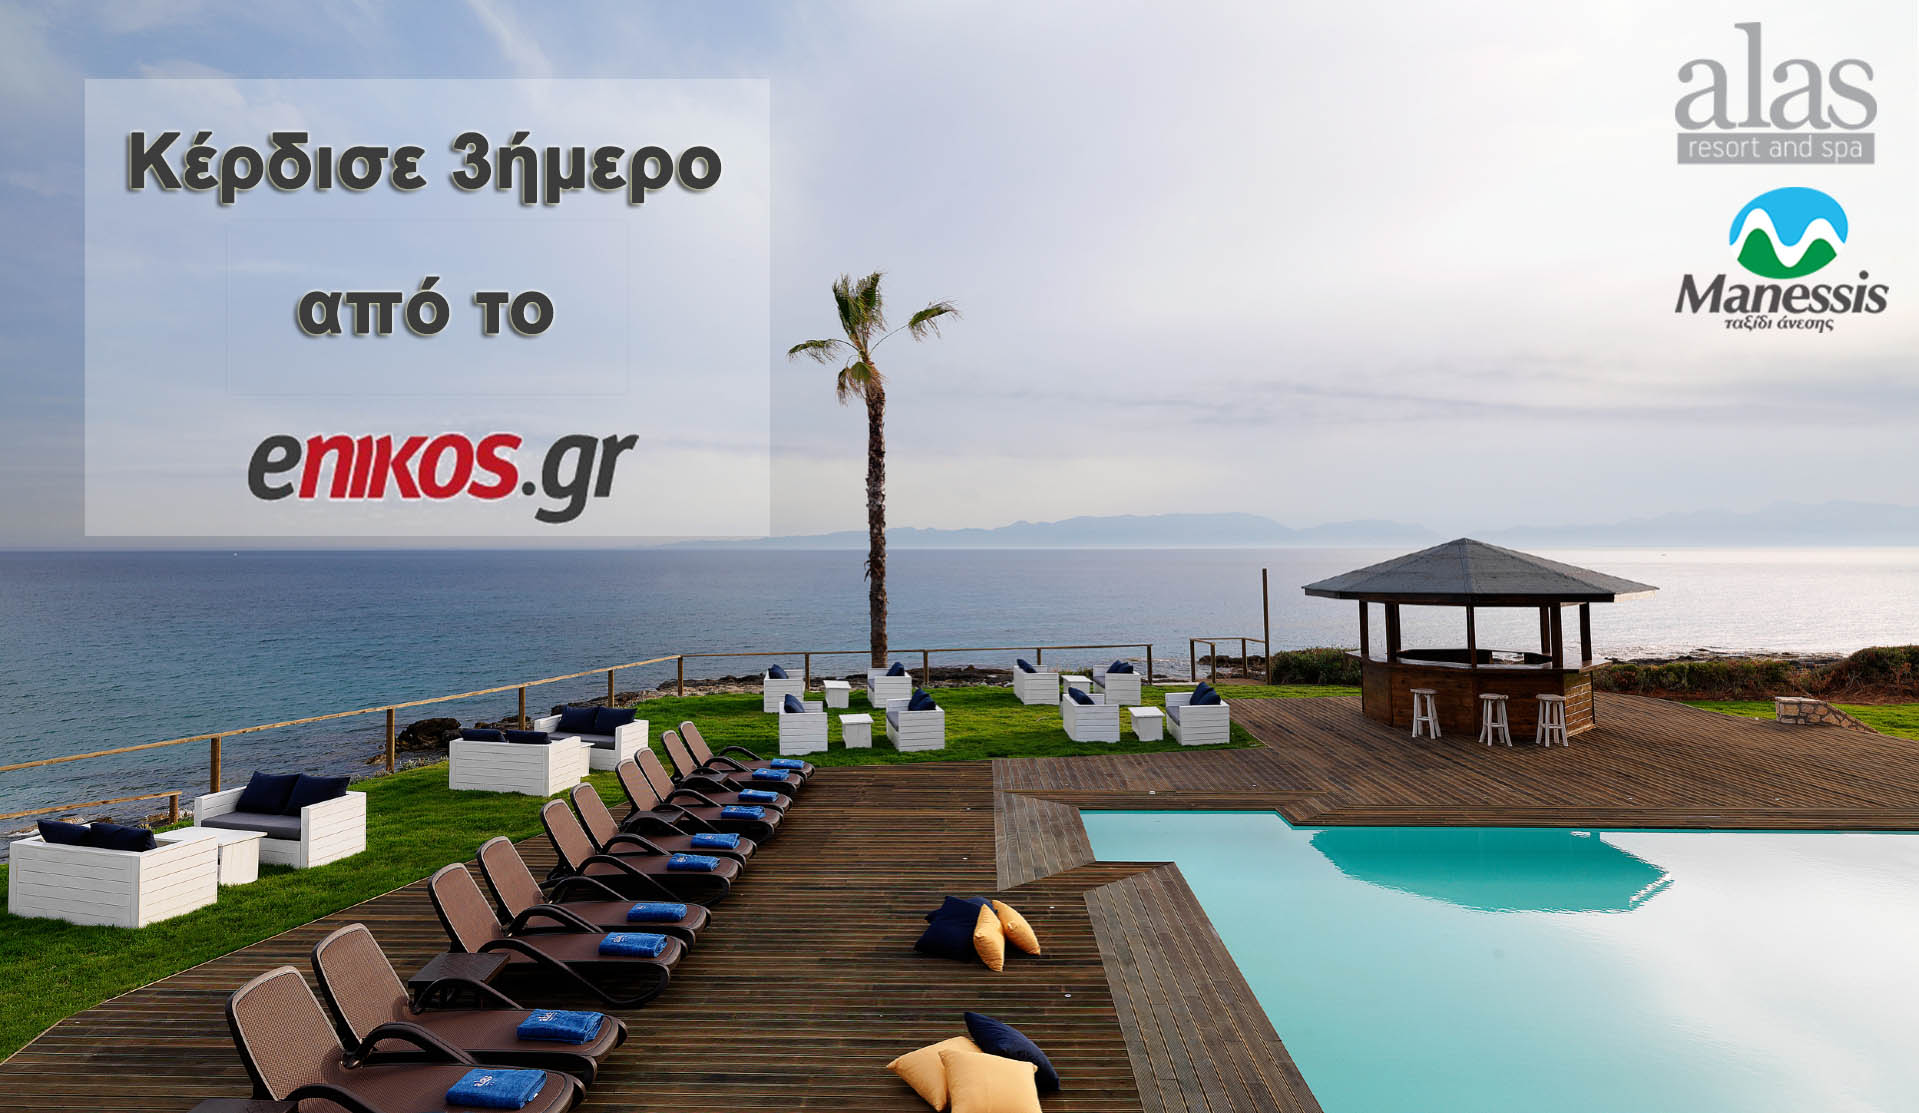 Κέρδισε τριήμερο στο Alas Resort & Spa από το enikos.gr και το ταξιδιωτικό γραφείο Manessis